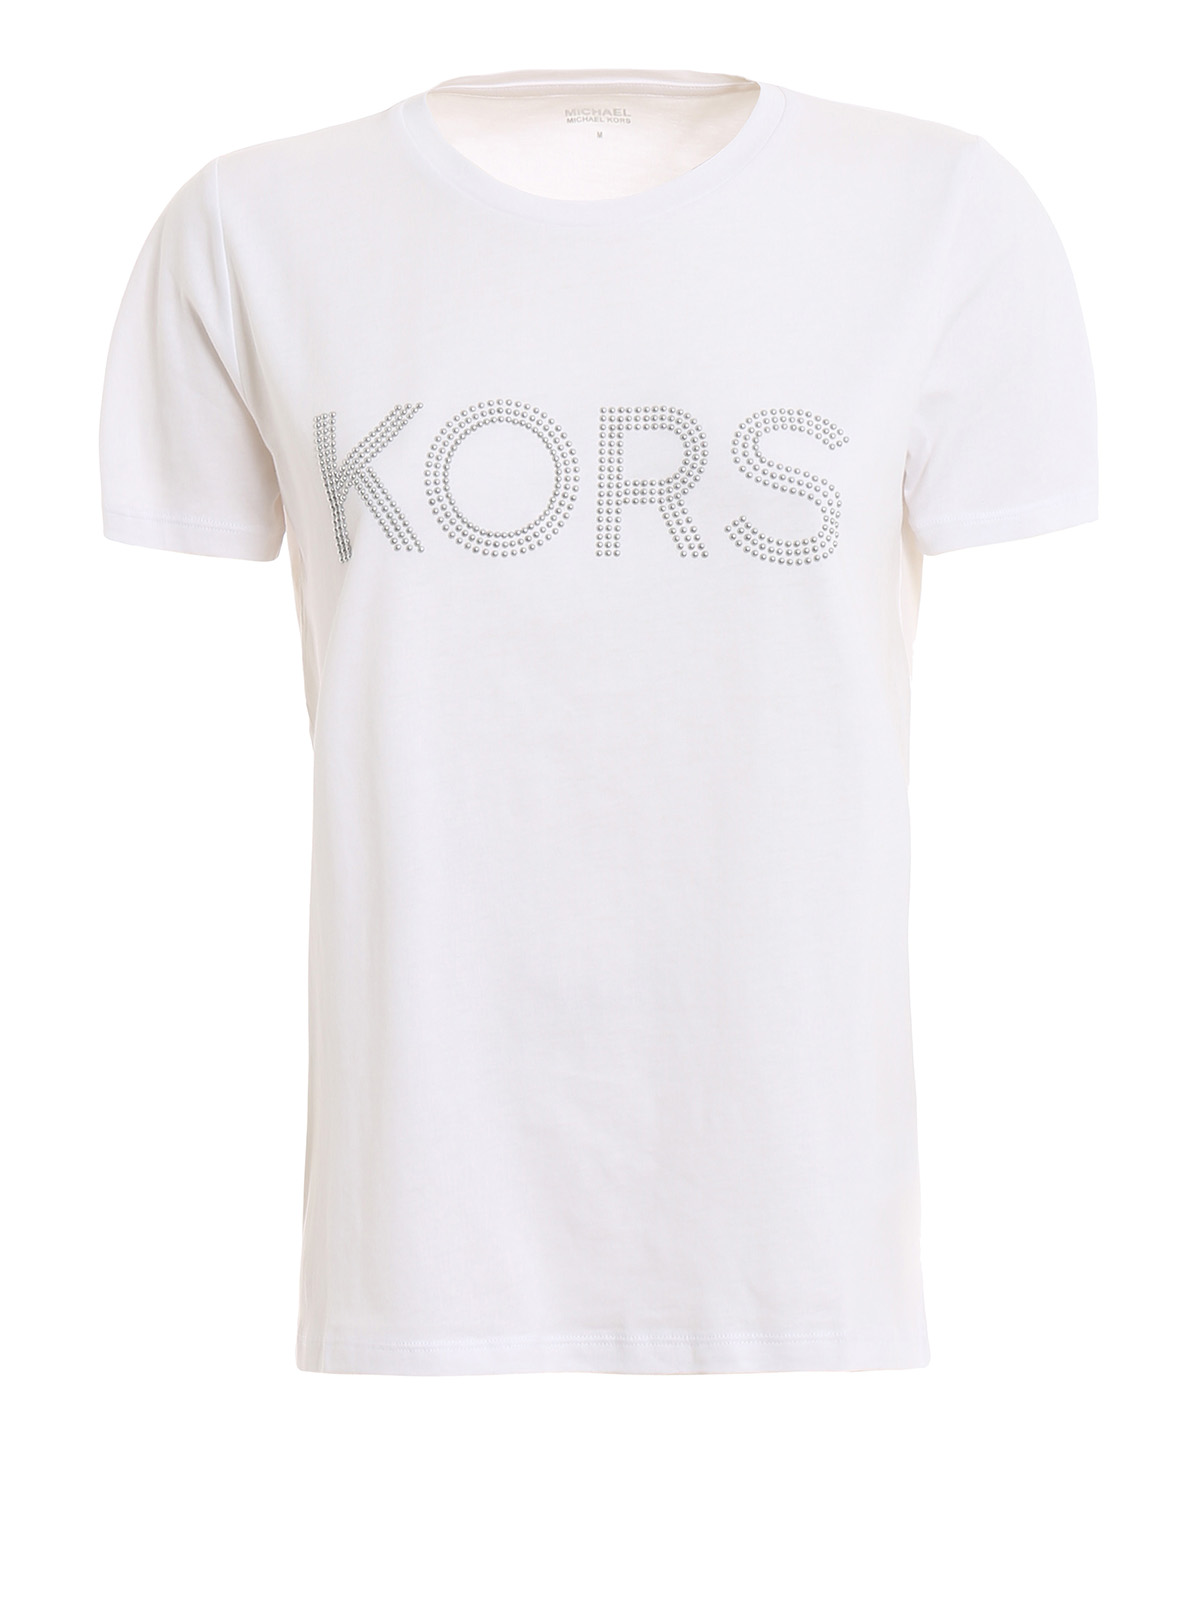 michael kors white tee shirts